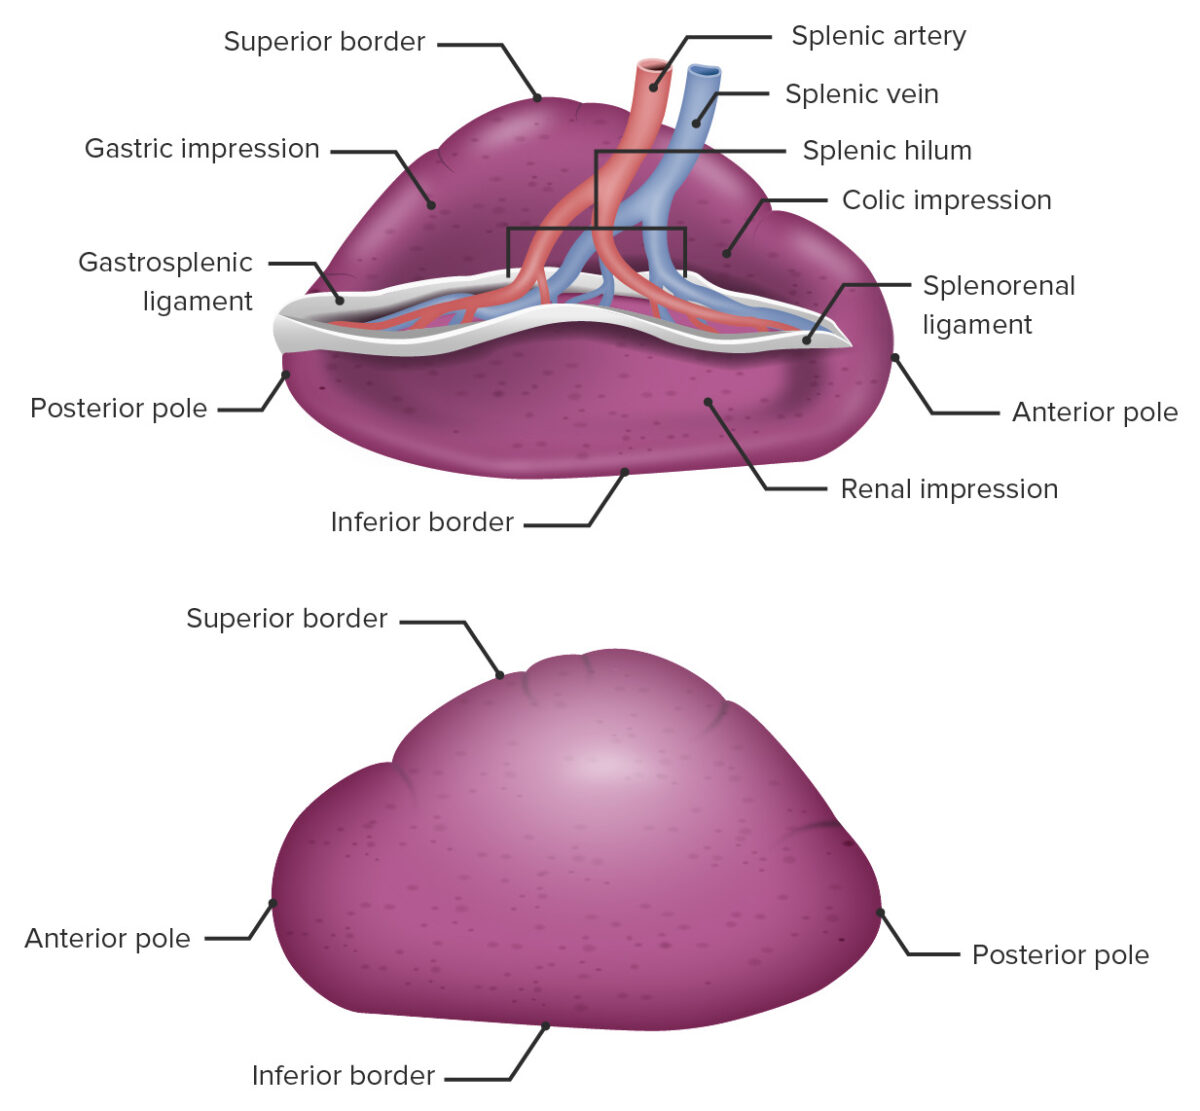 Gross anatomy of the spleen